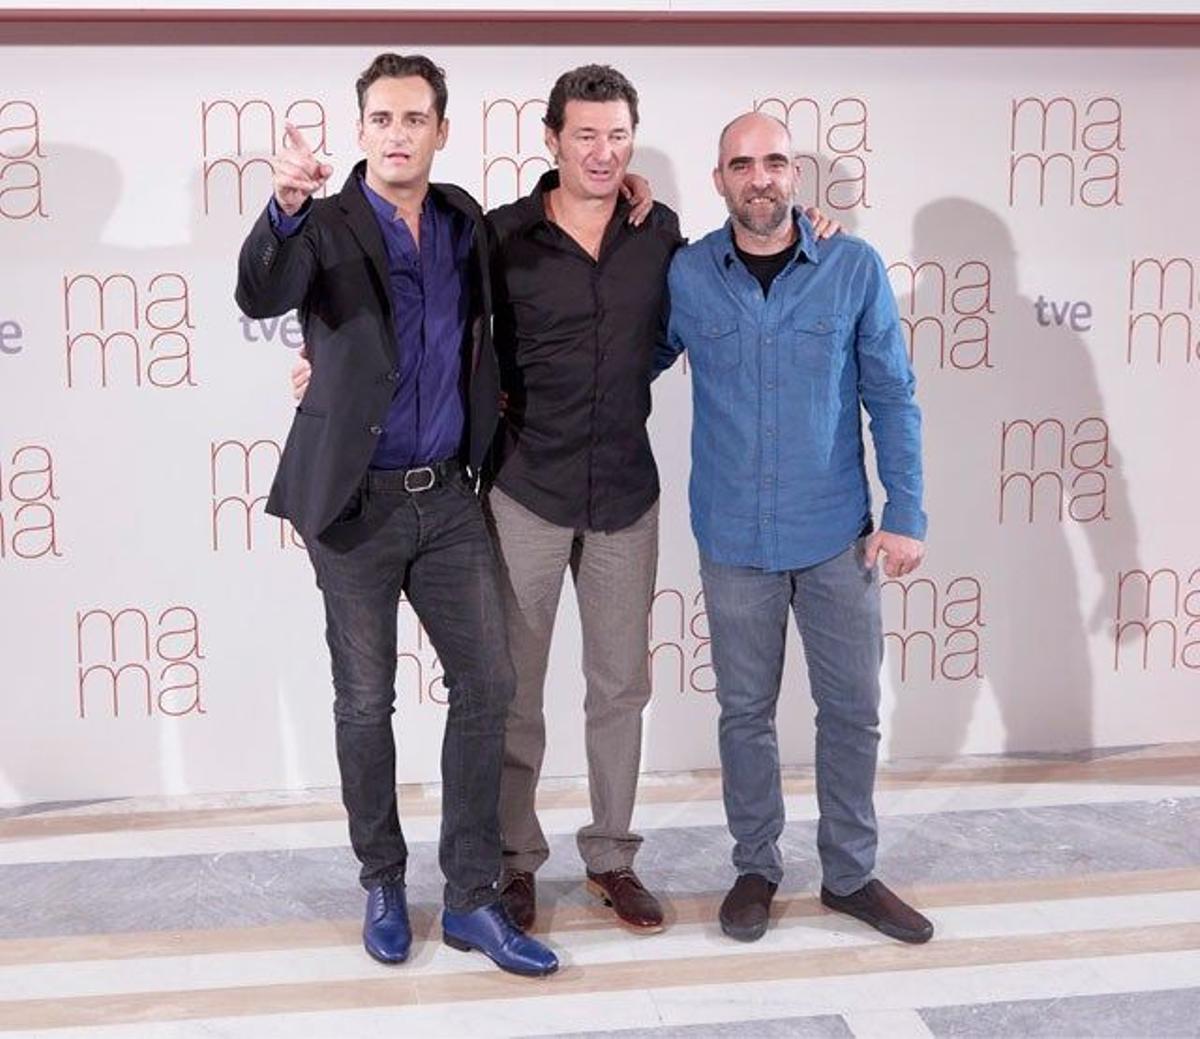 Asier Etxeandía, Julio Medem, Luis Tosar en la presentación de 'Ma Ma' en Madrid